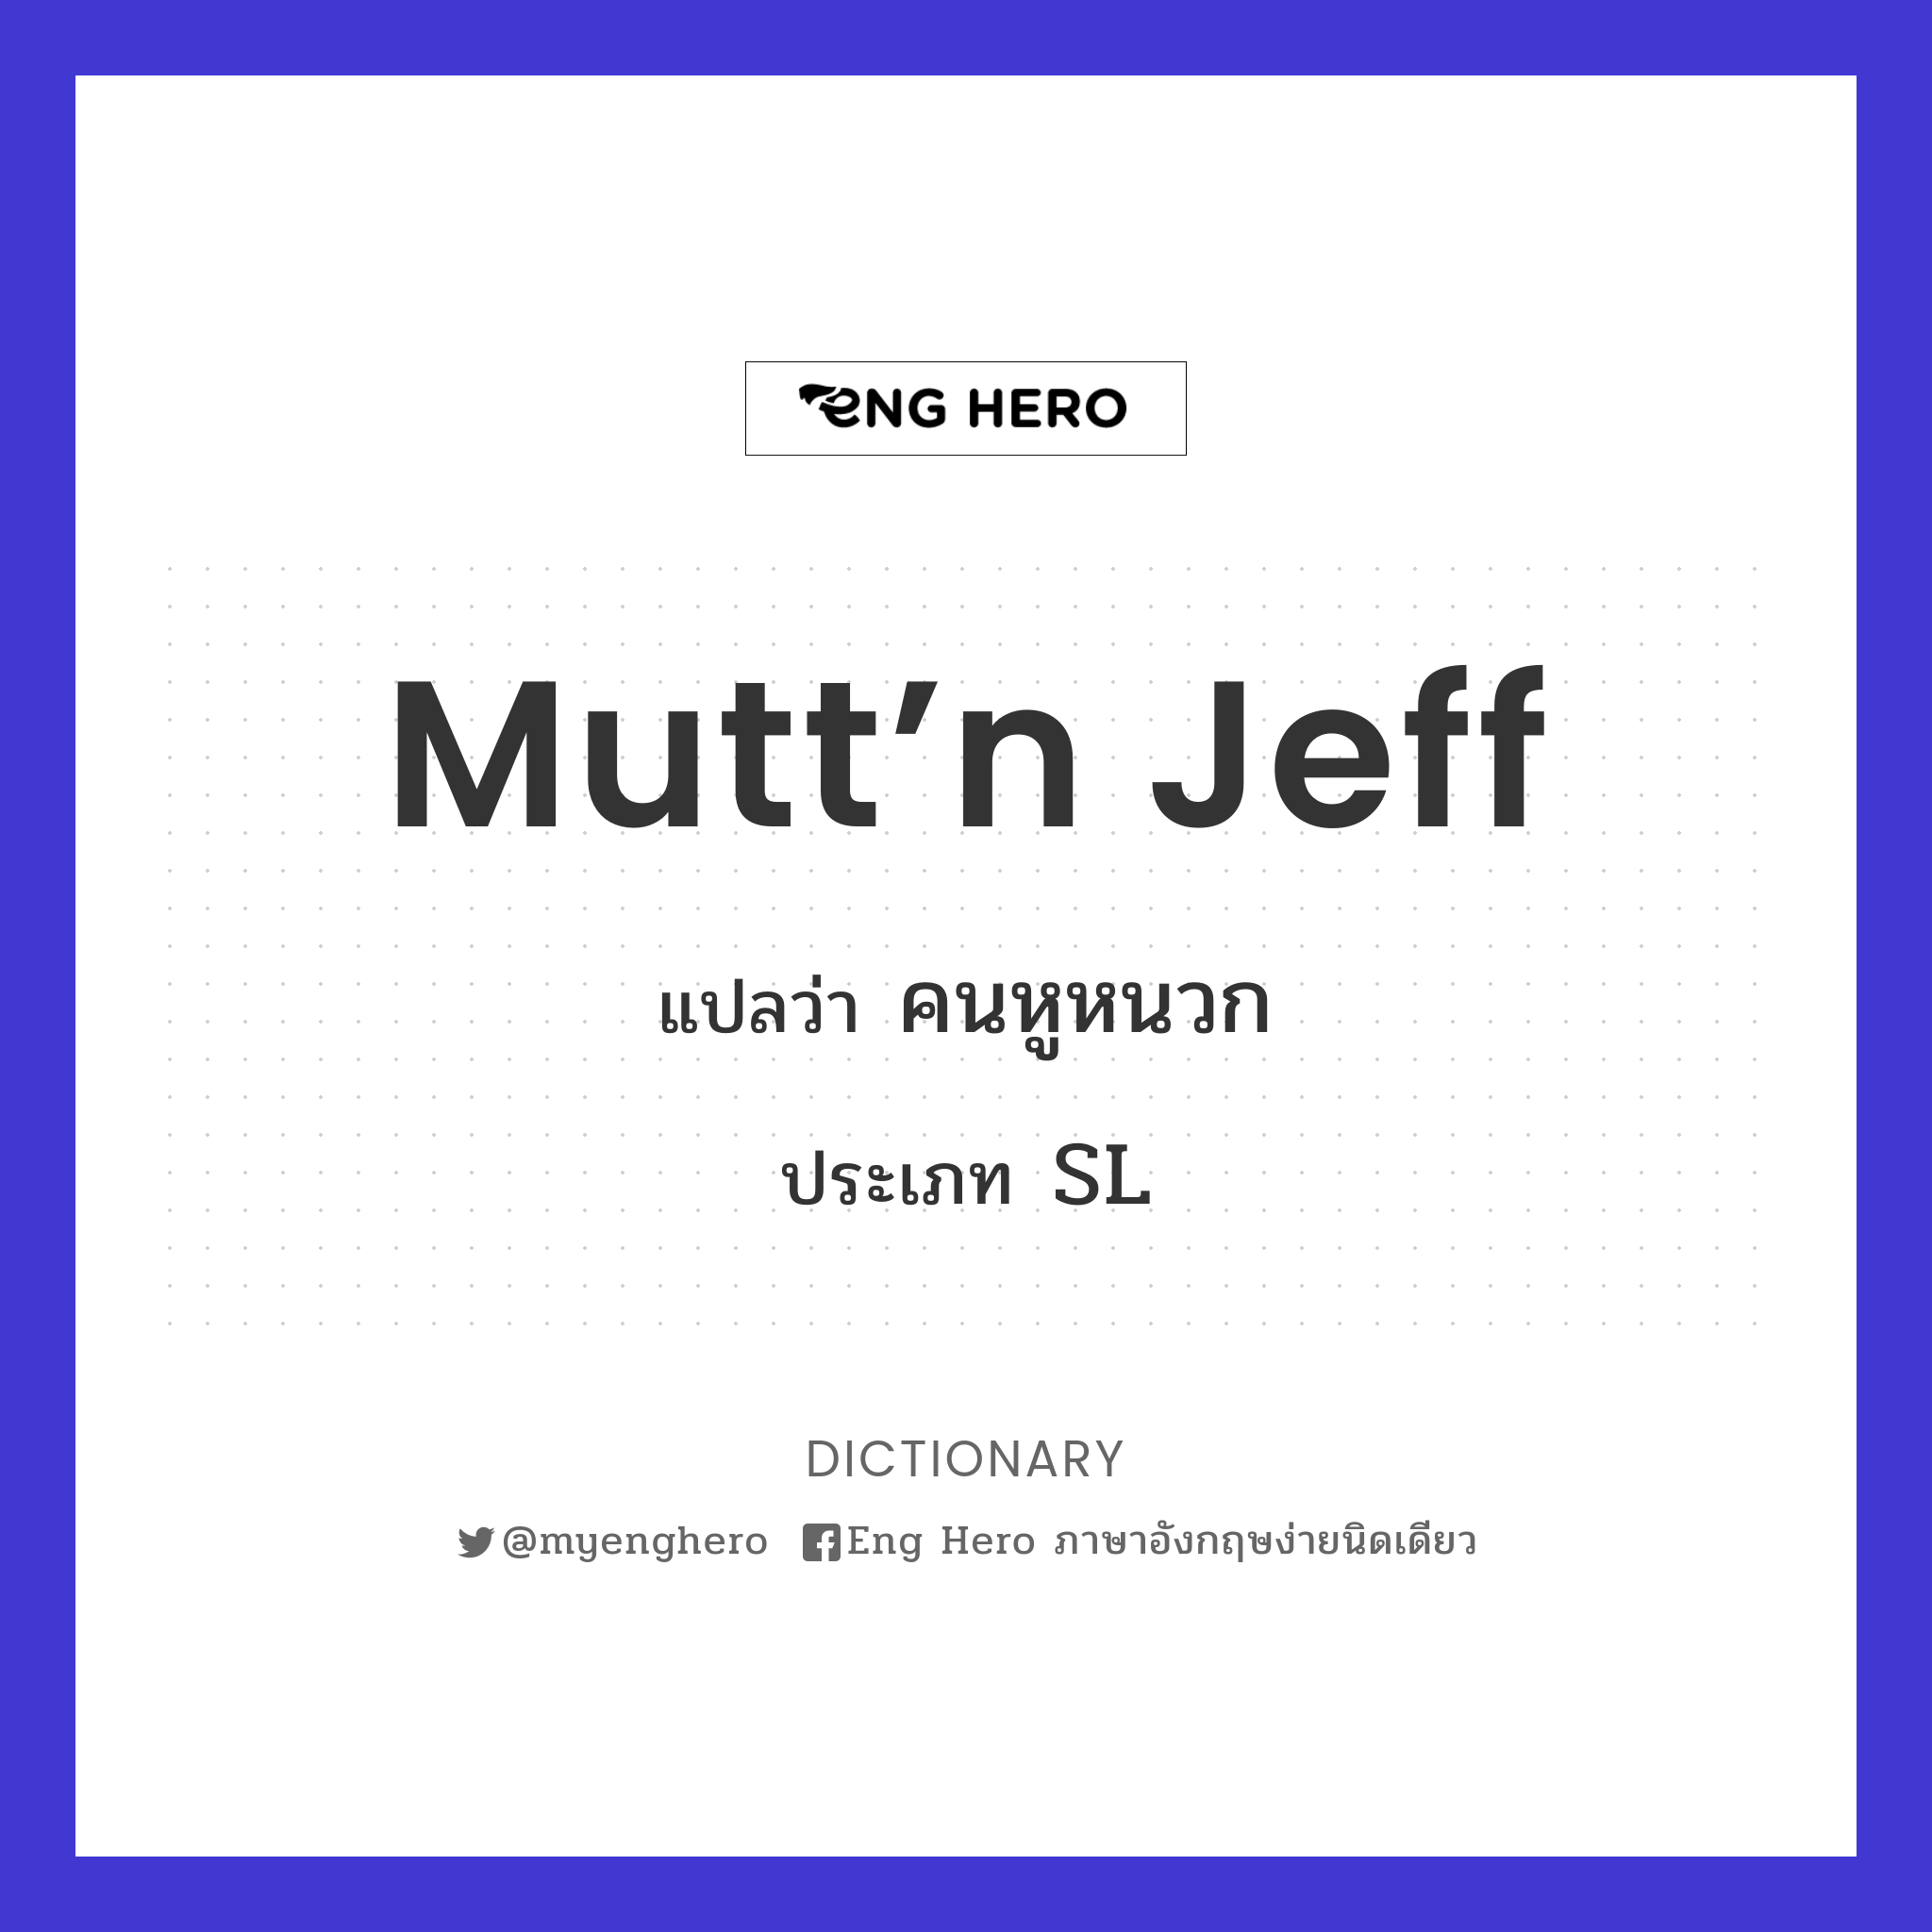 Mutt’n Jeff